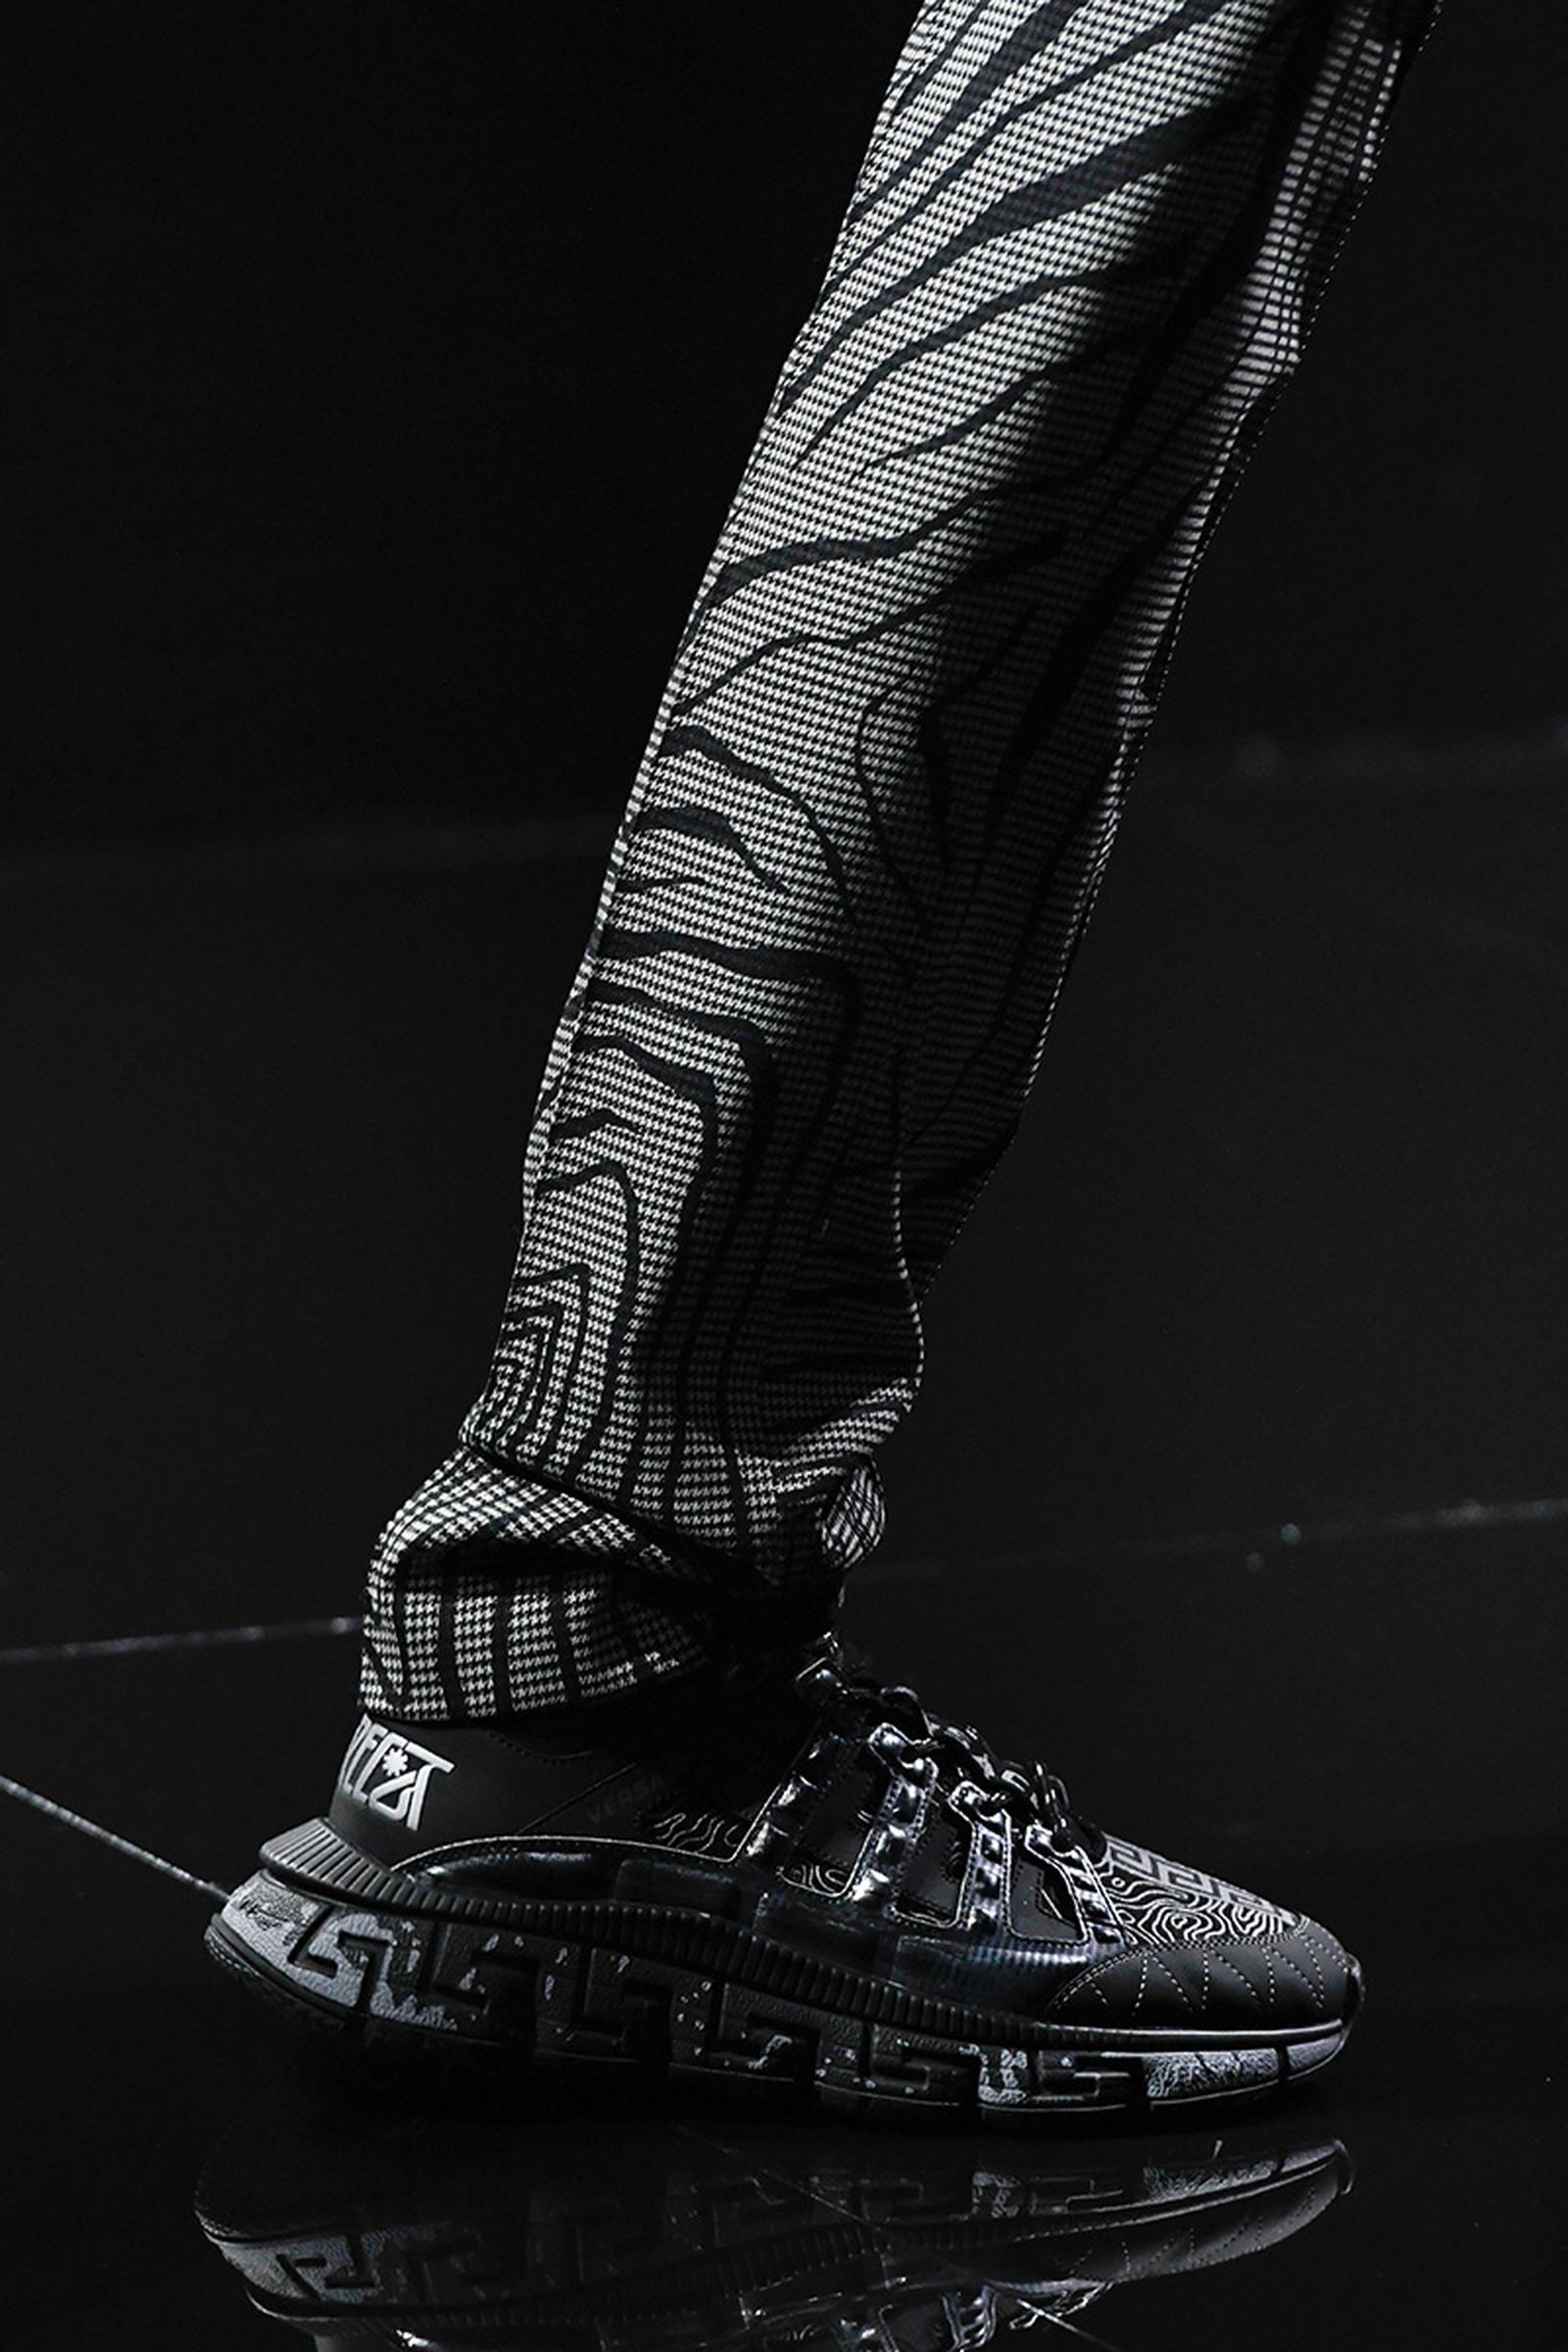 versace-trigreca-sneaker-release-date-price-fw20-01